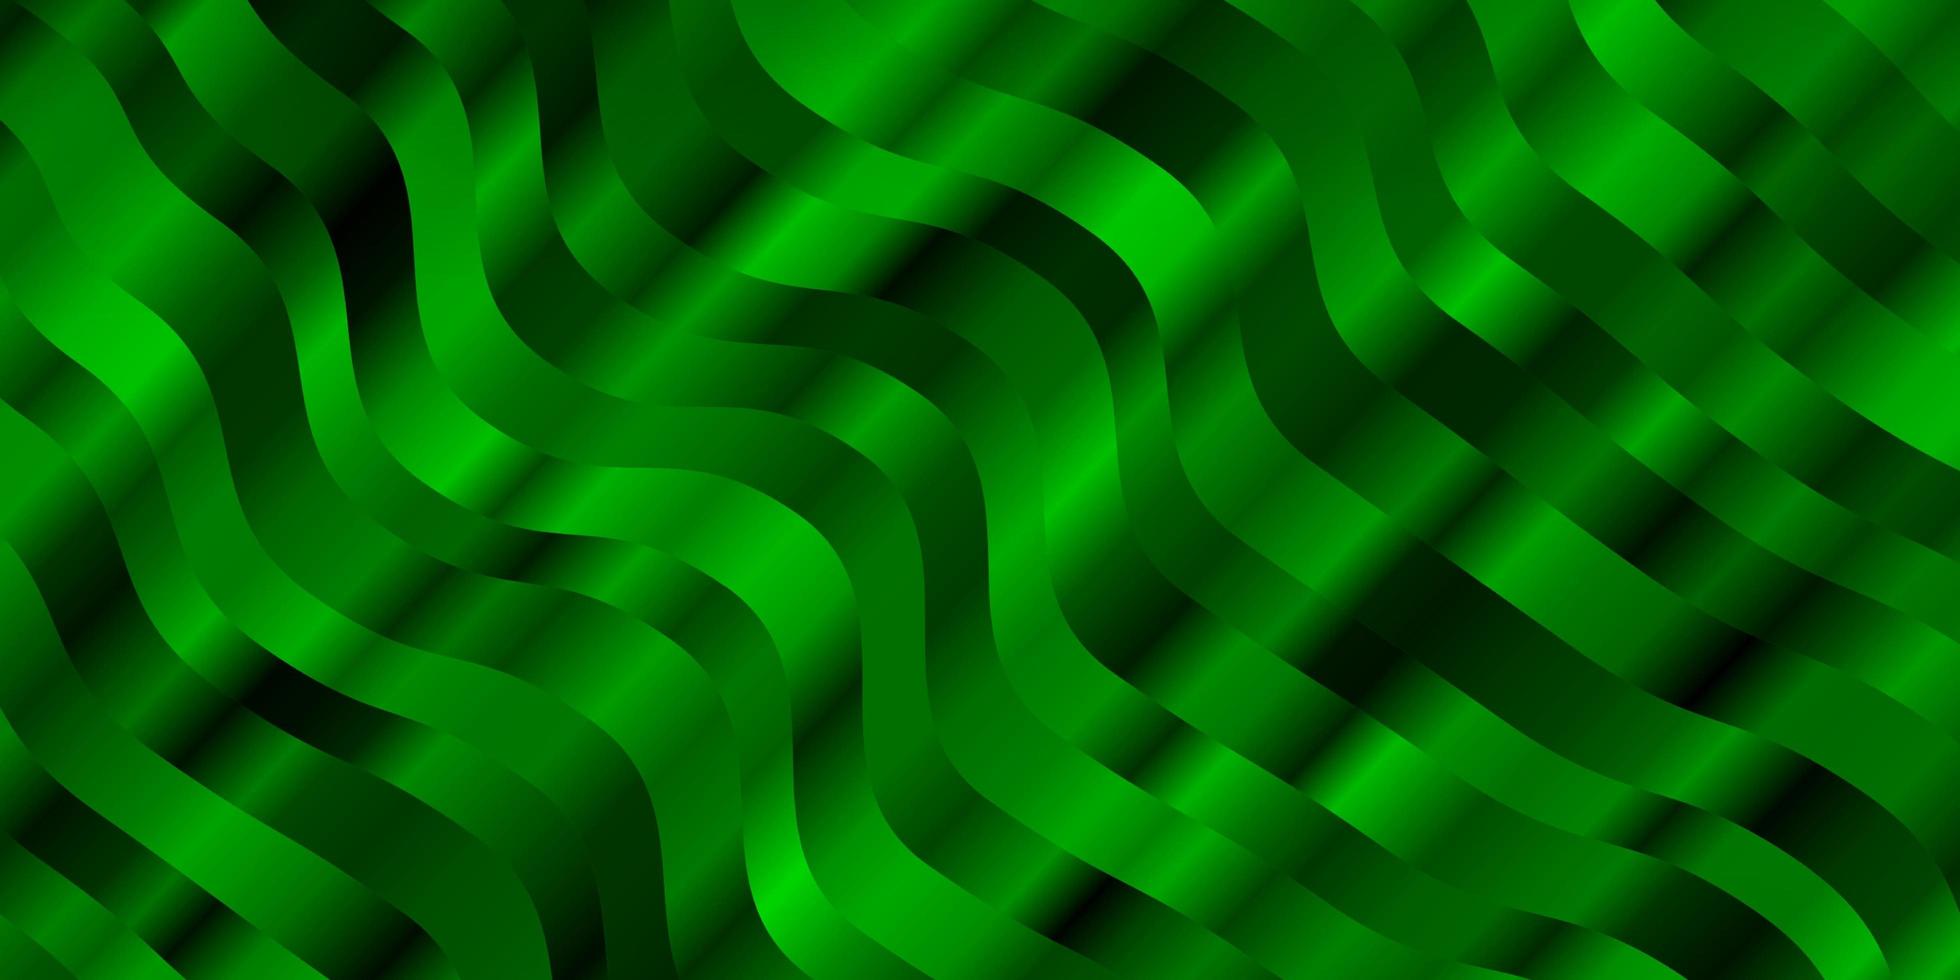 Telón de fondo de vector verde claro con arco circular. colorida ilustración abstracta con curvas de degradado. diseño para la promoción de su negocio.